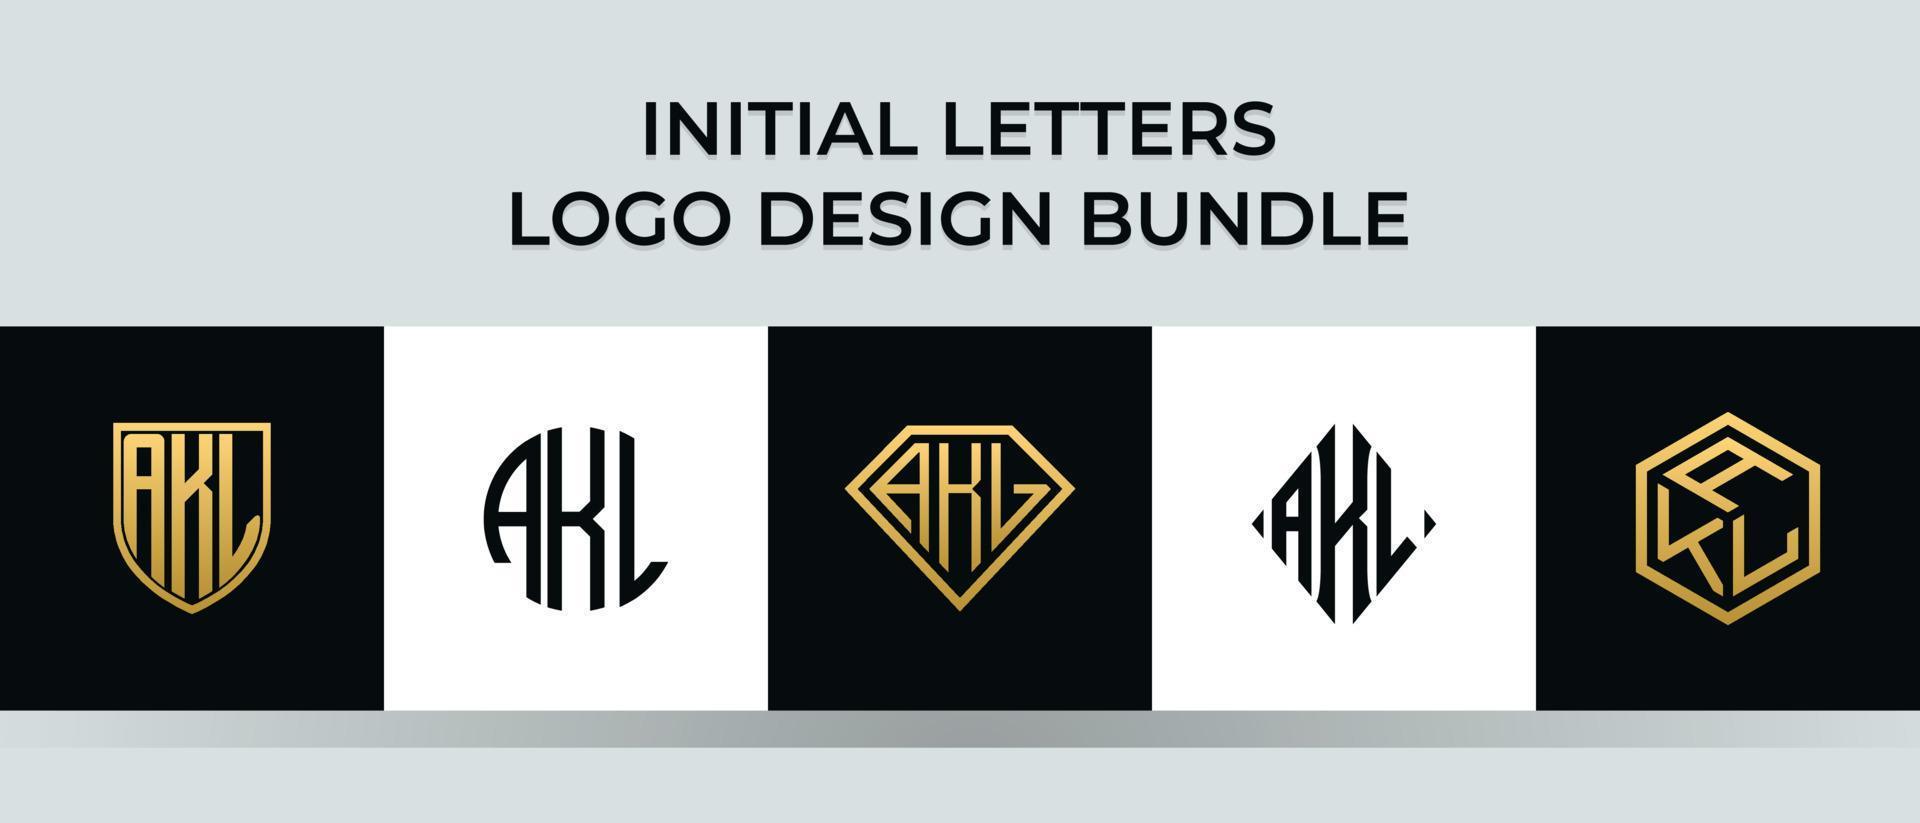 Initial letters AKL logo designs Bundle vector